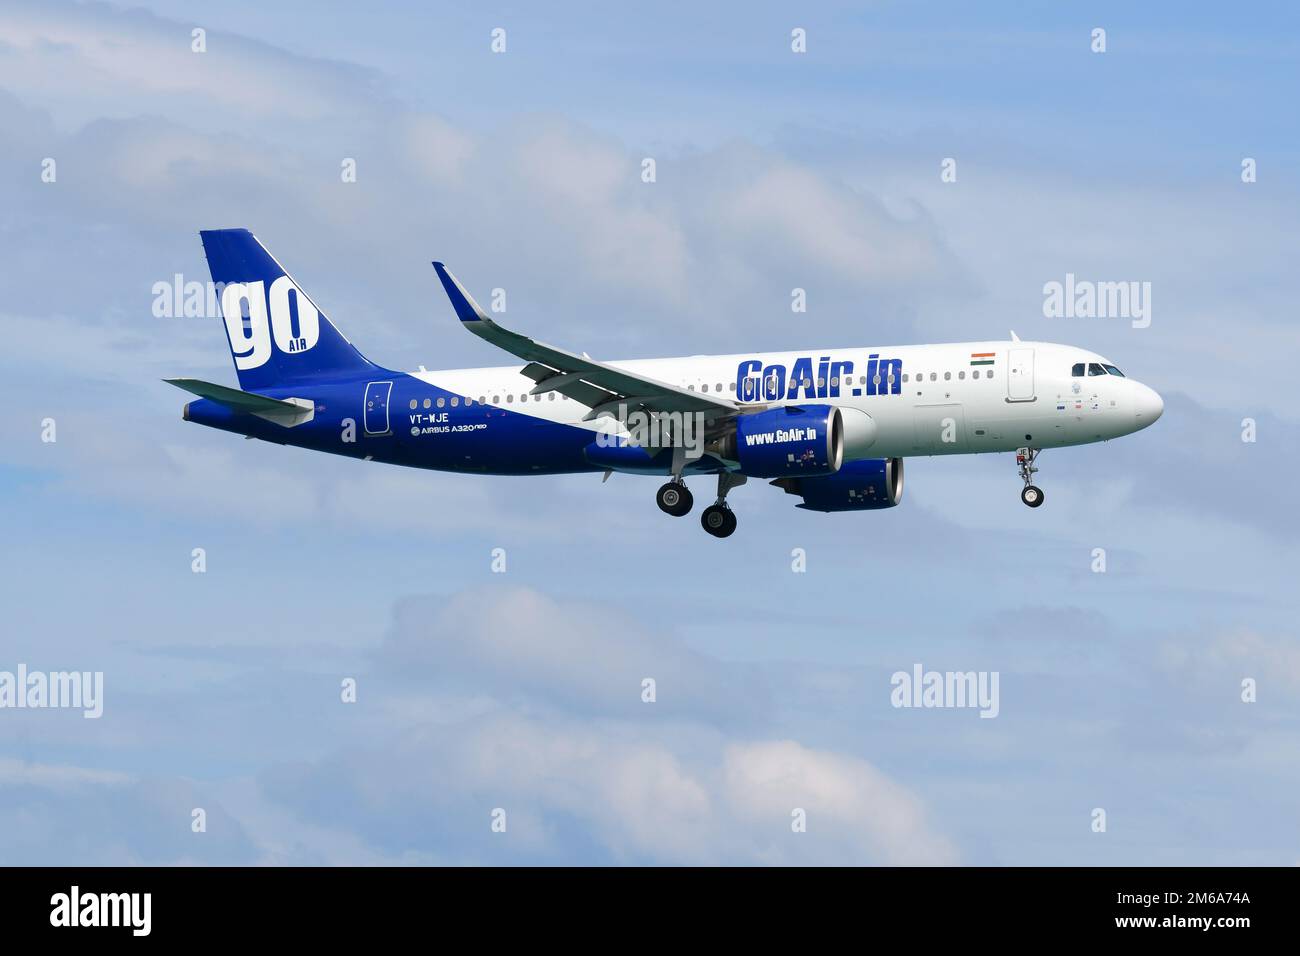 Flugzeuge der Fluggesellschaft GoAir Airbus A320 fliegen. Flugzeug A320 von Go Air India. Stockfoto